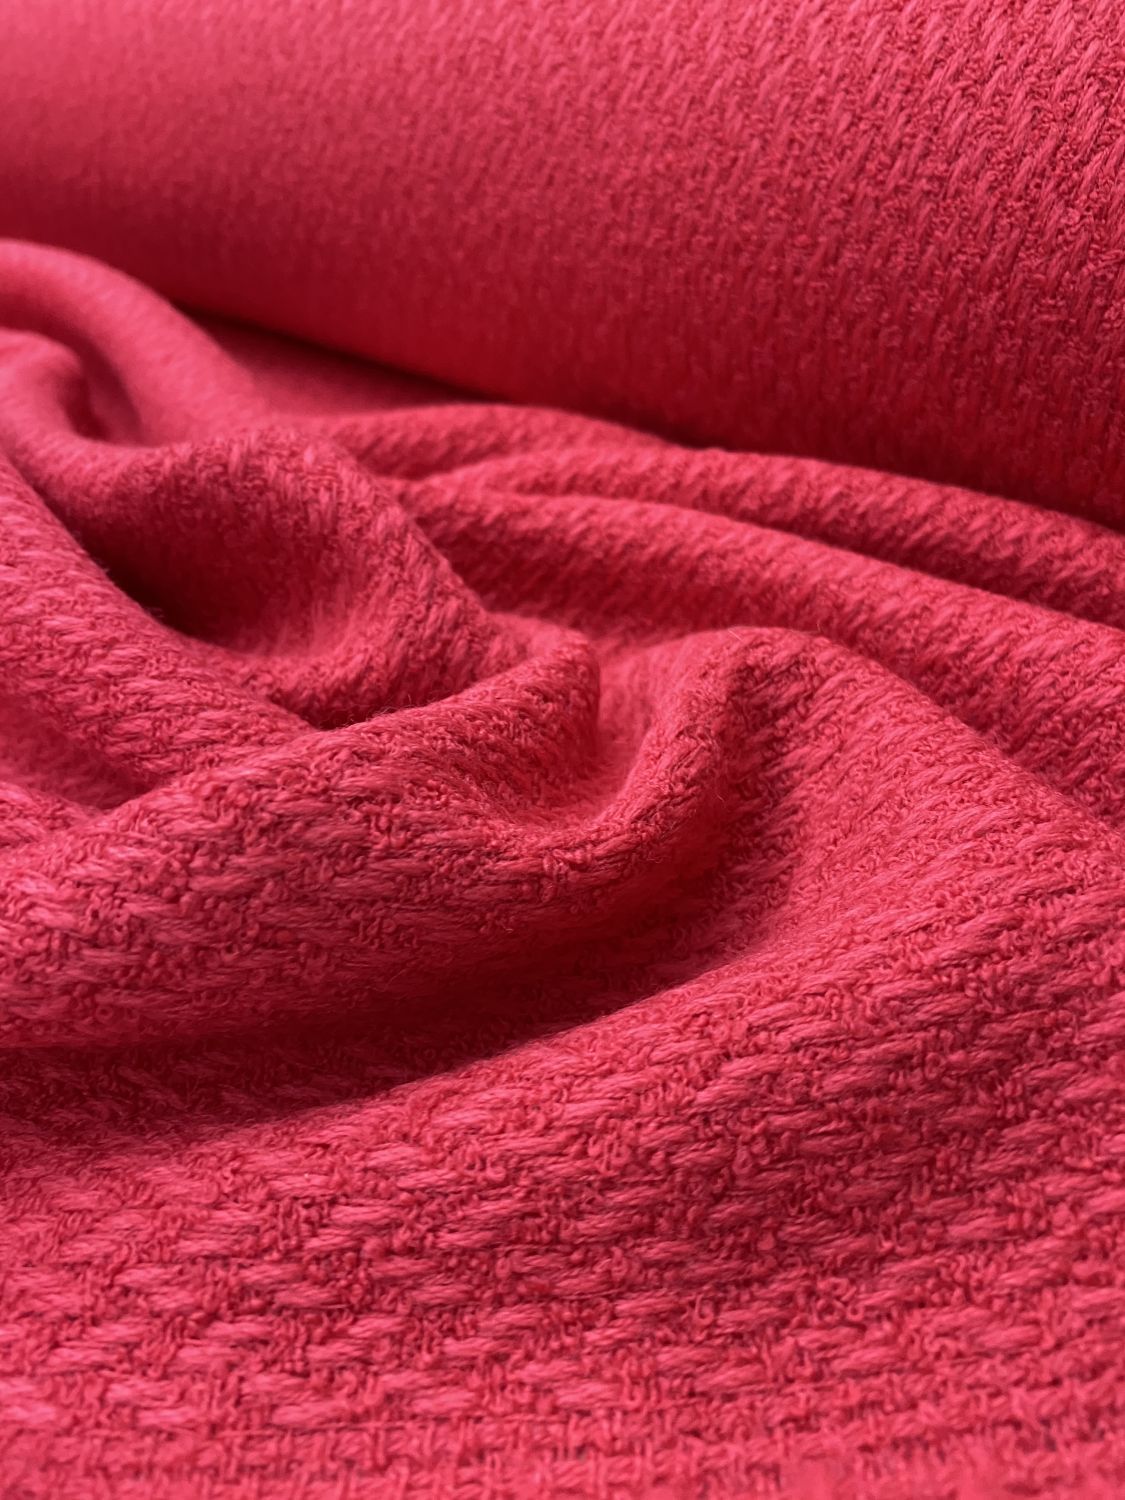 Ткань пальтовая ягодного цвета